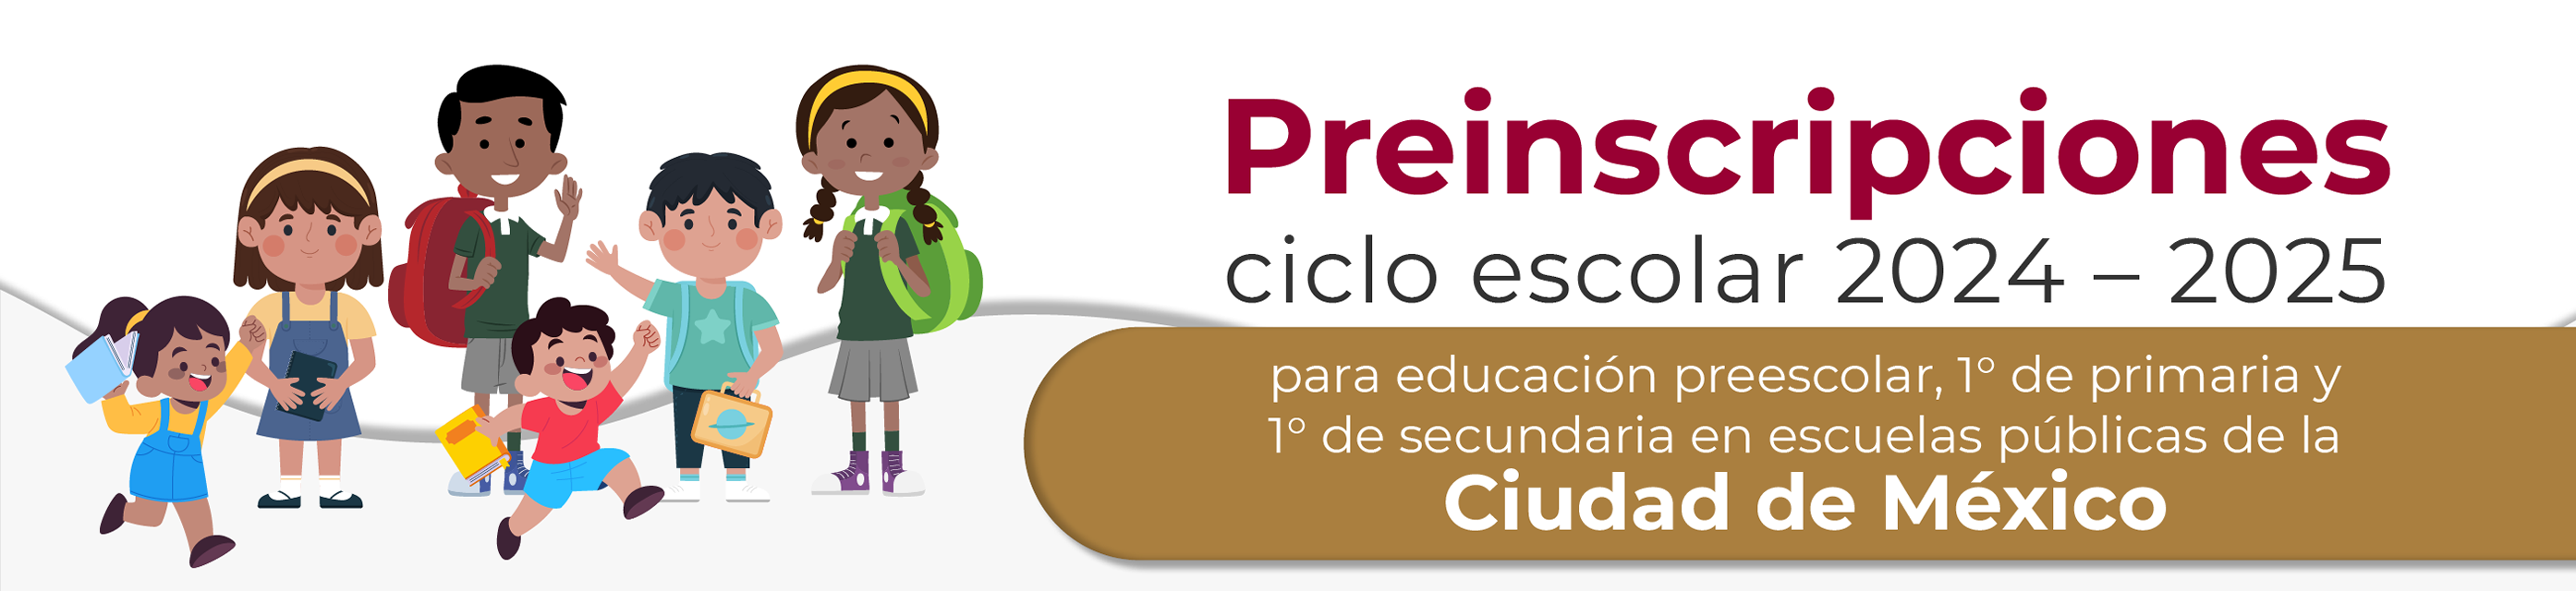 Preinscripciones Ciclo Escolar 2024 - 2025 Ciudad de México